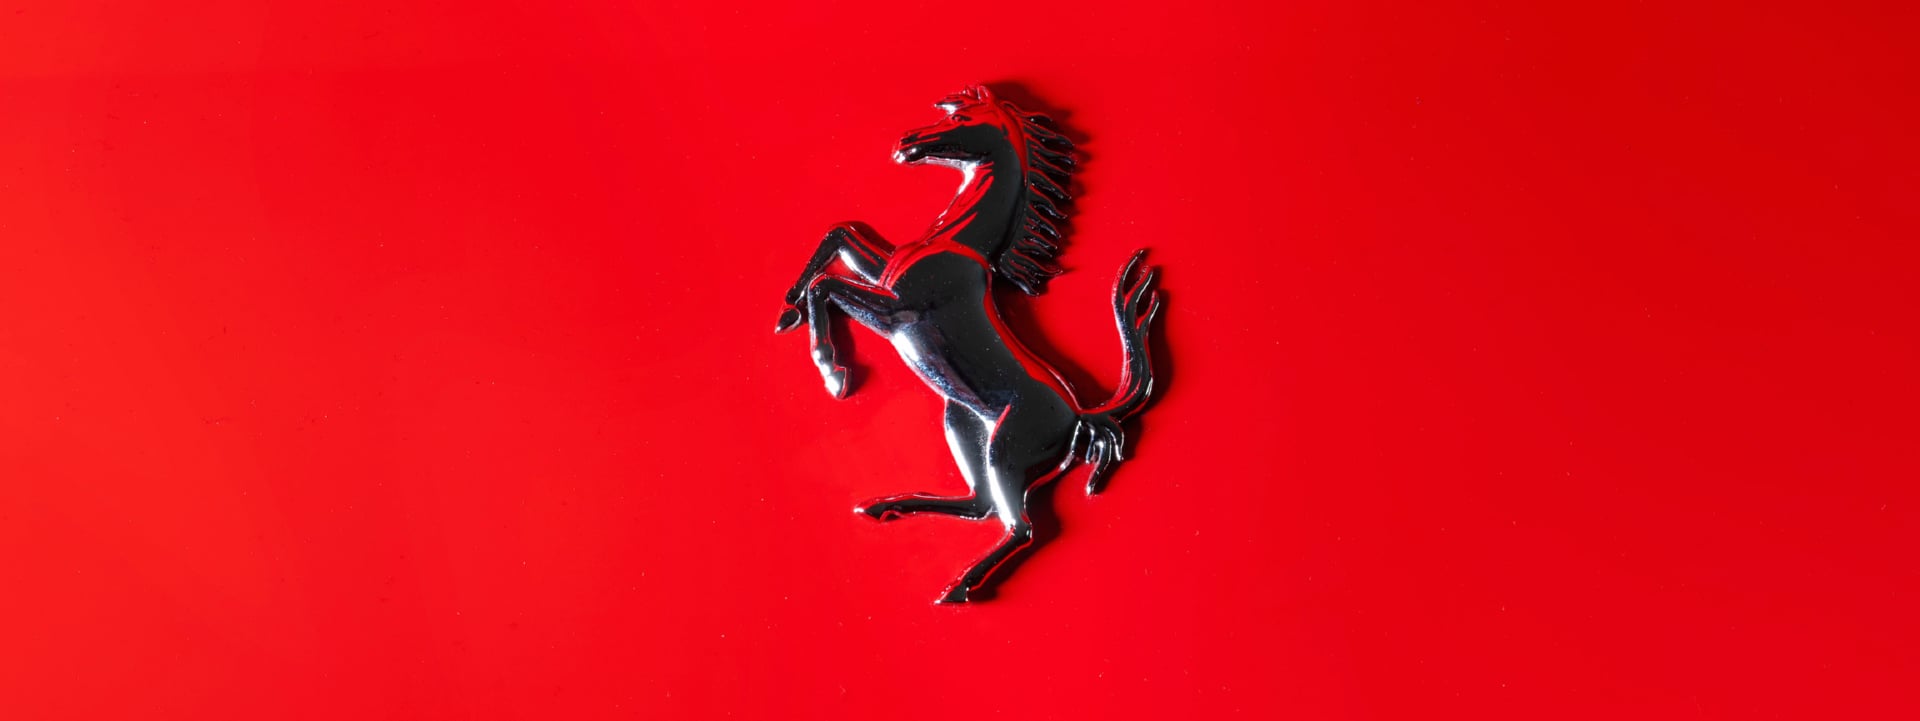 Ferrari logo at 1024 x 1024 iPad size wallpapers HD quality